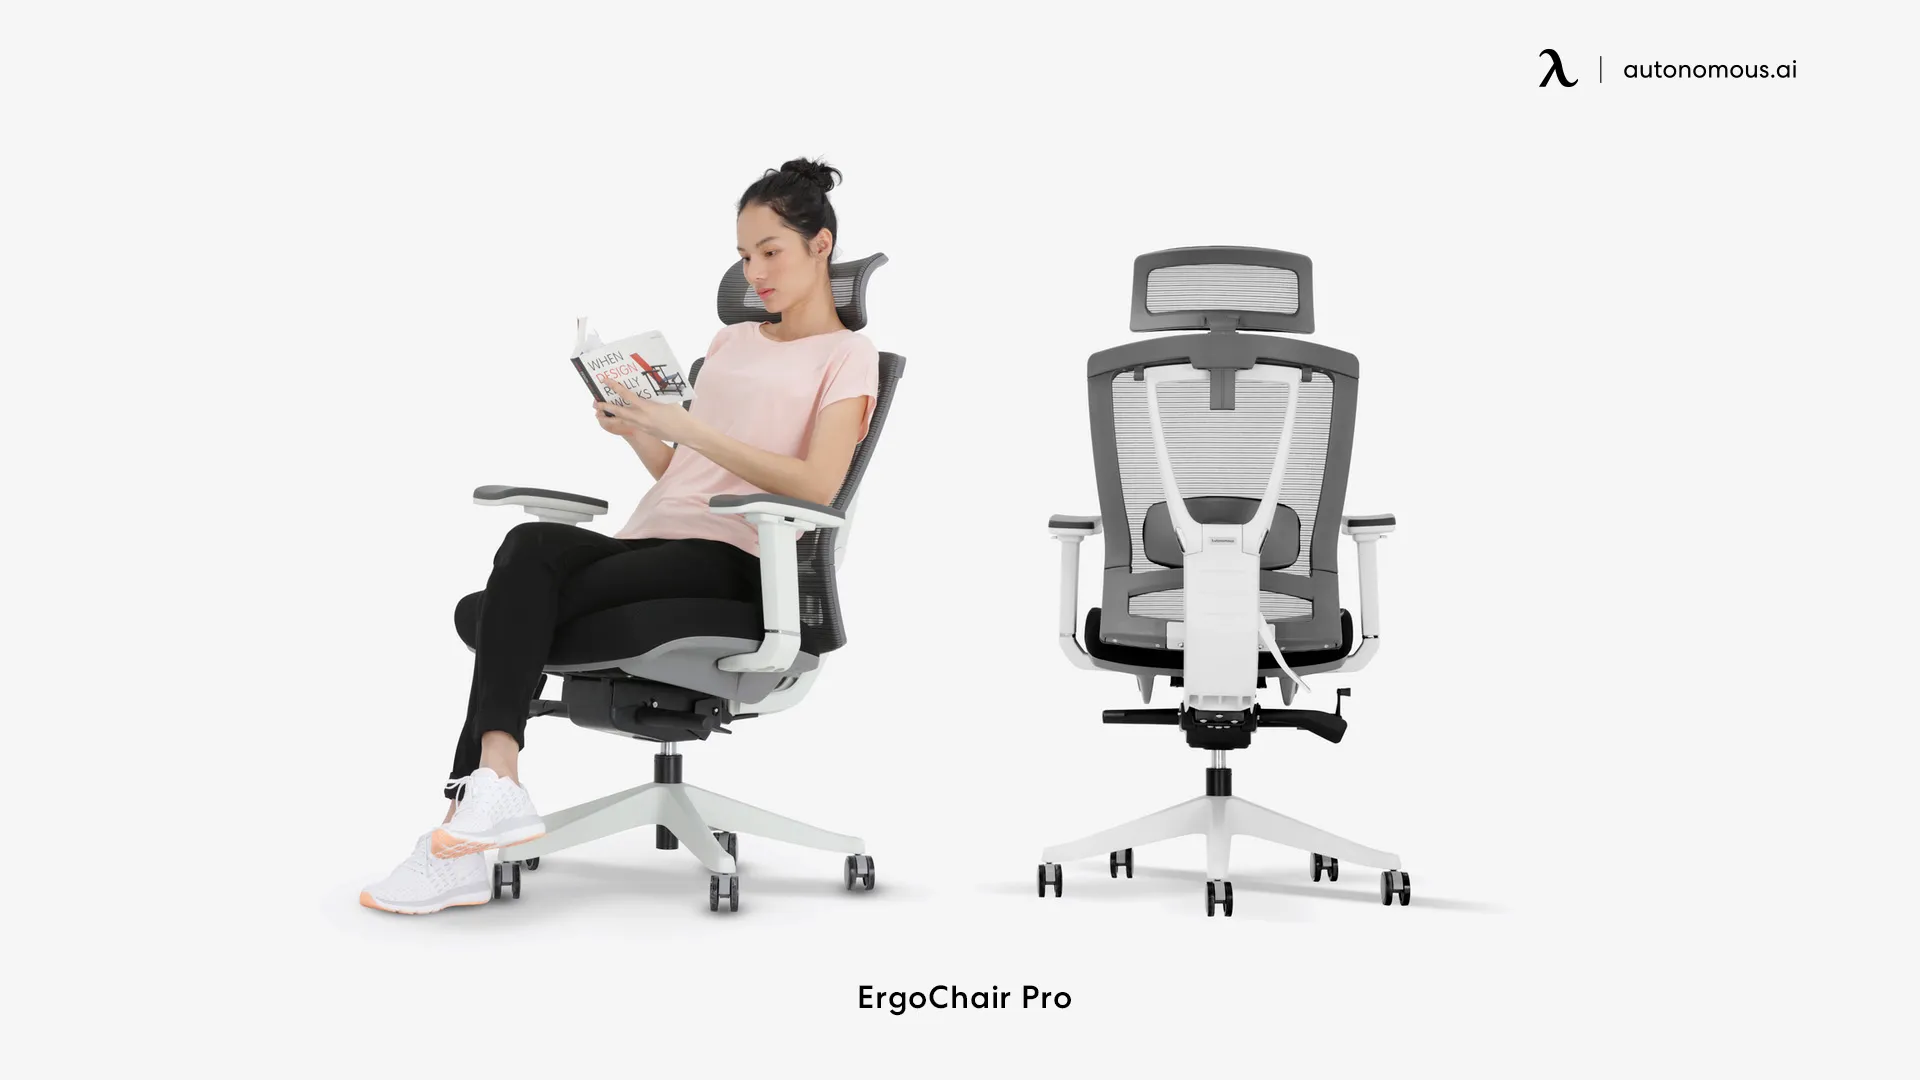 ErgoChair Pro best office chair for hemorrhoids